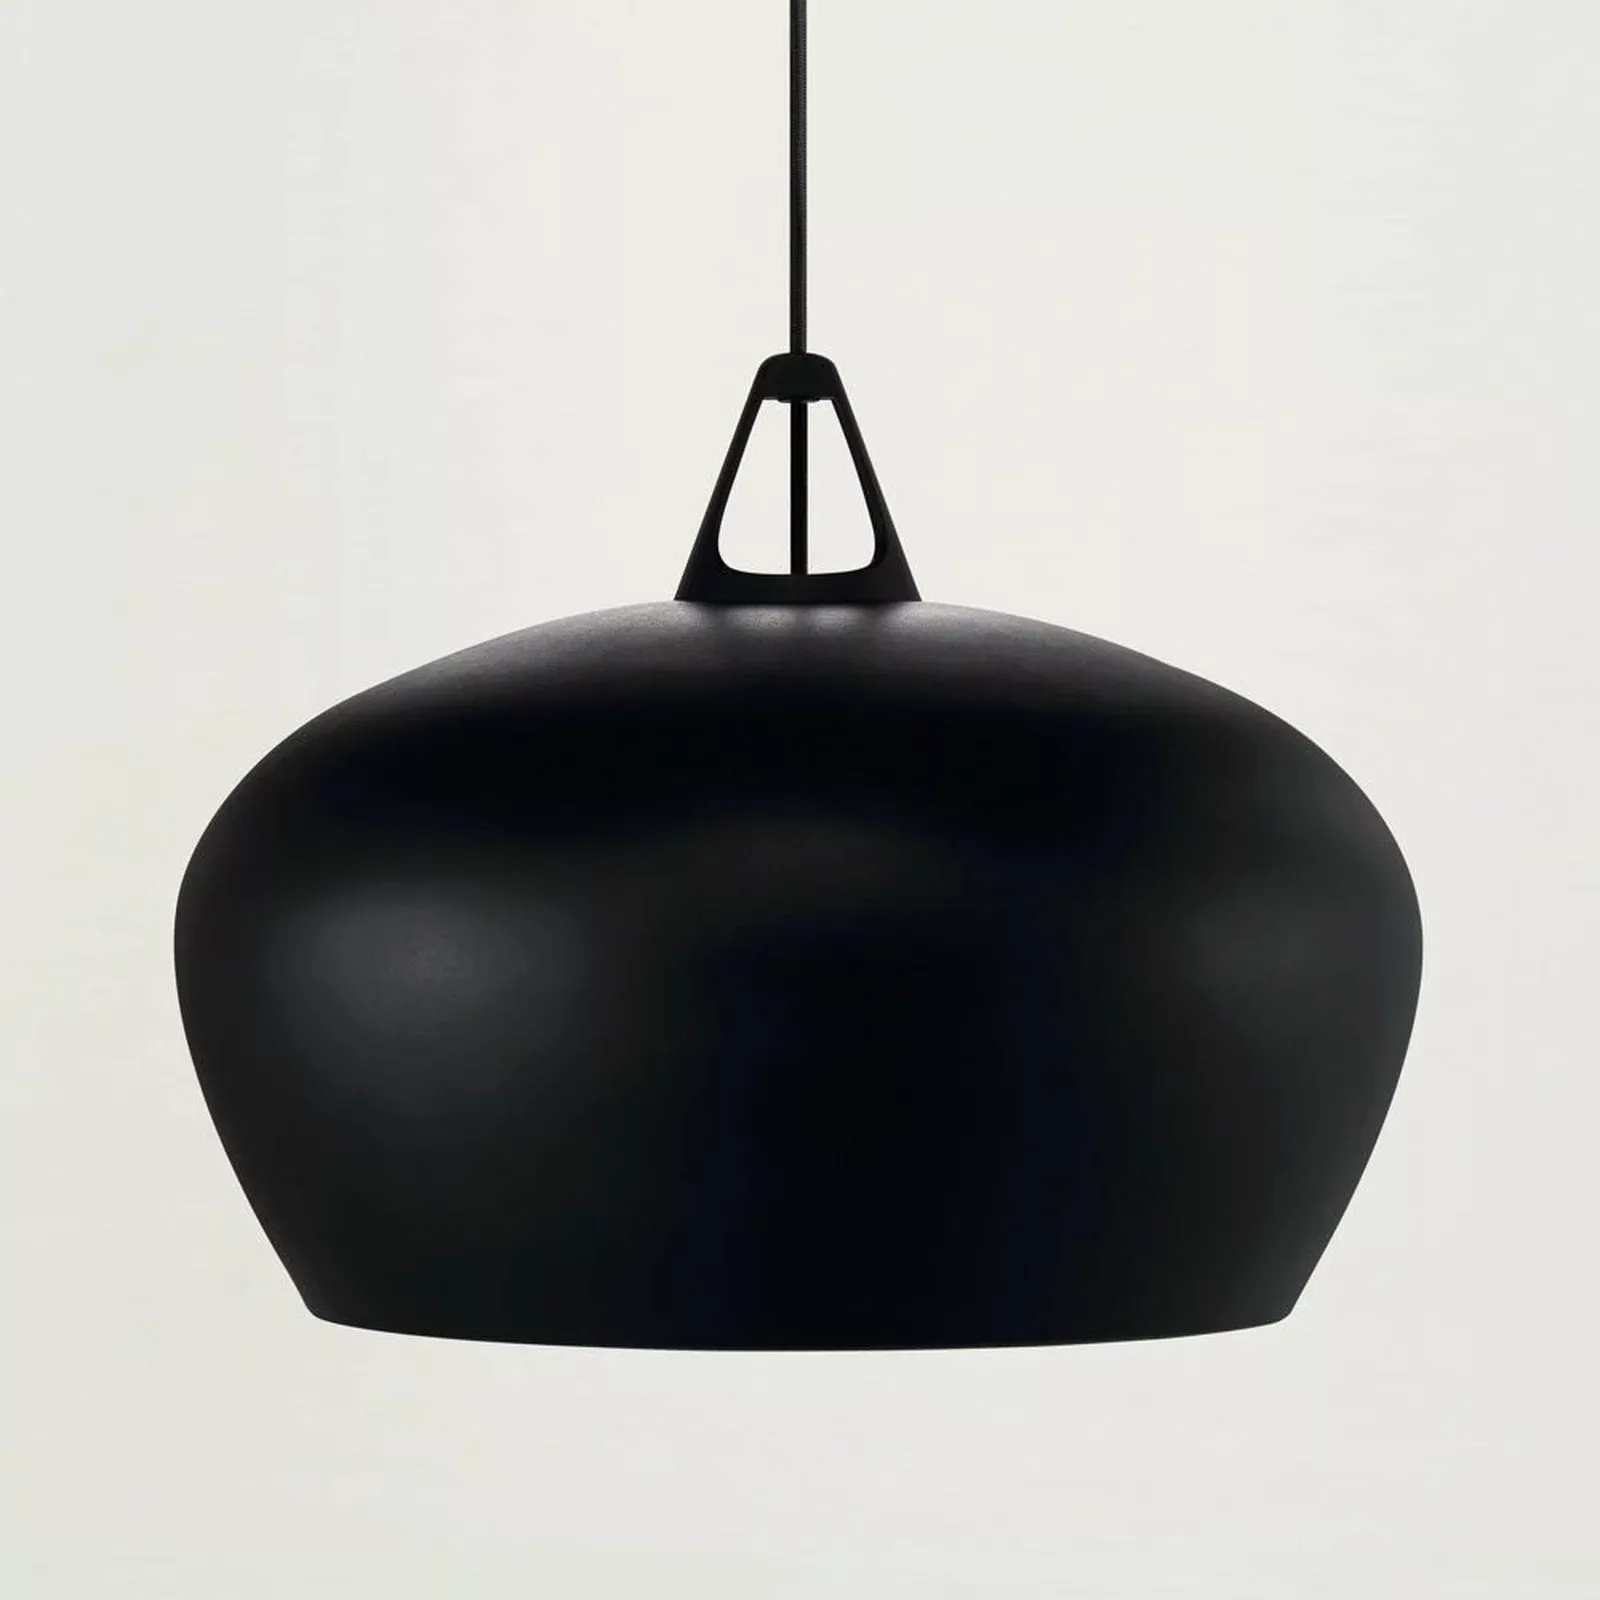 Designer Pendelleuchte Belly, schwarz, E27, 460 mm, by Bonnelycke MDD günstig online kaufen